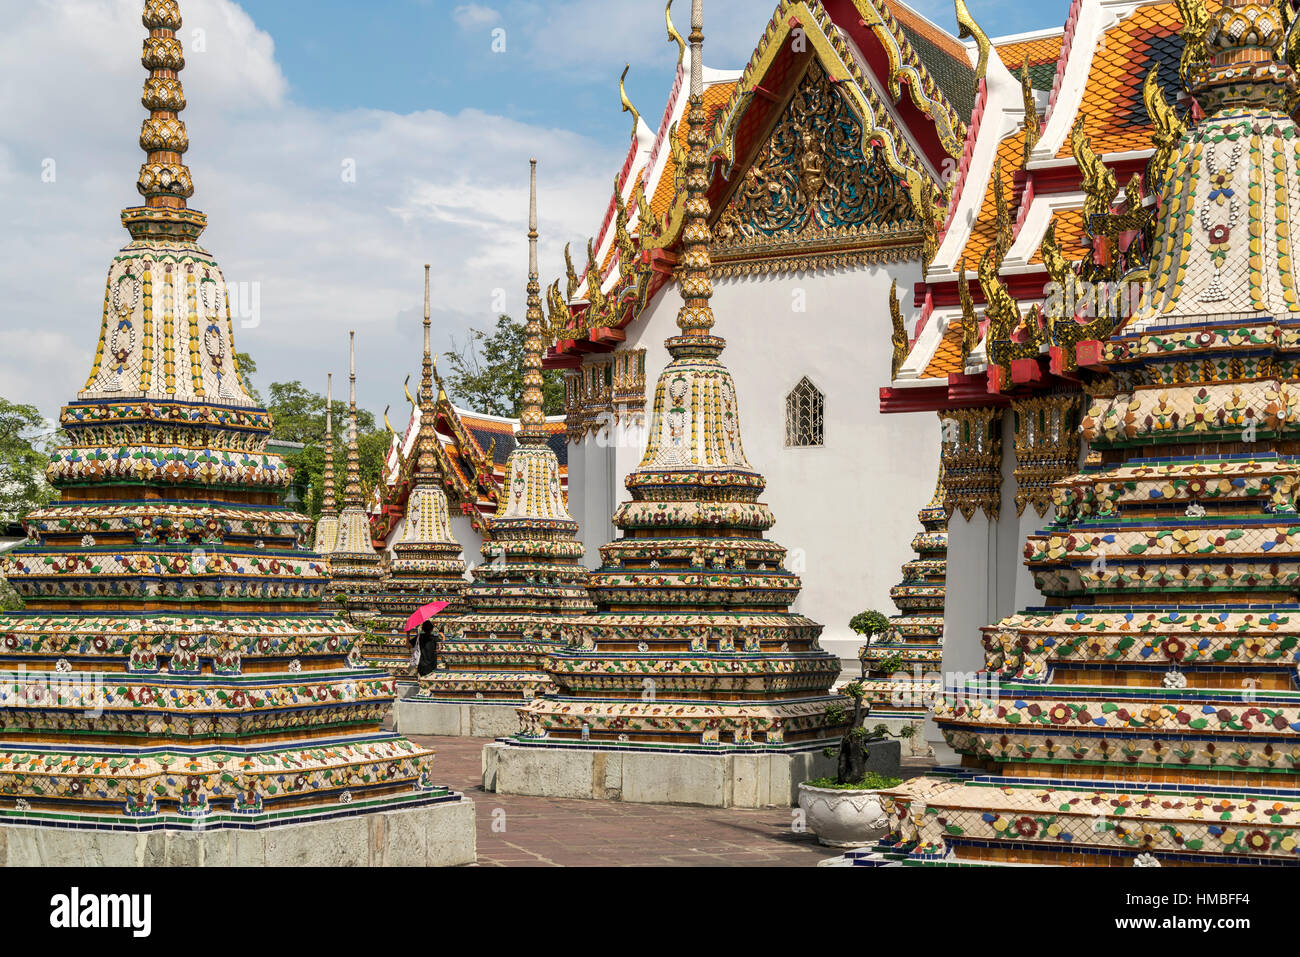 Chedi die buddhistische Tempelanlage Wat Pho, Bangkok, Tha Chedi der buddhistischen Tempelanlage Wat Pho, Bangkok, Thailand, Asien Stockfoto